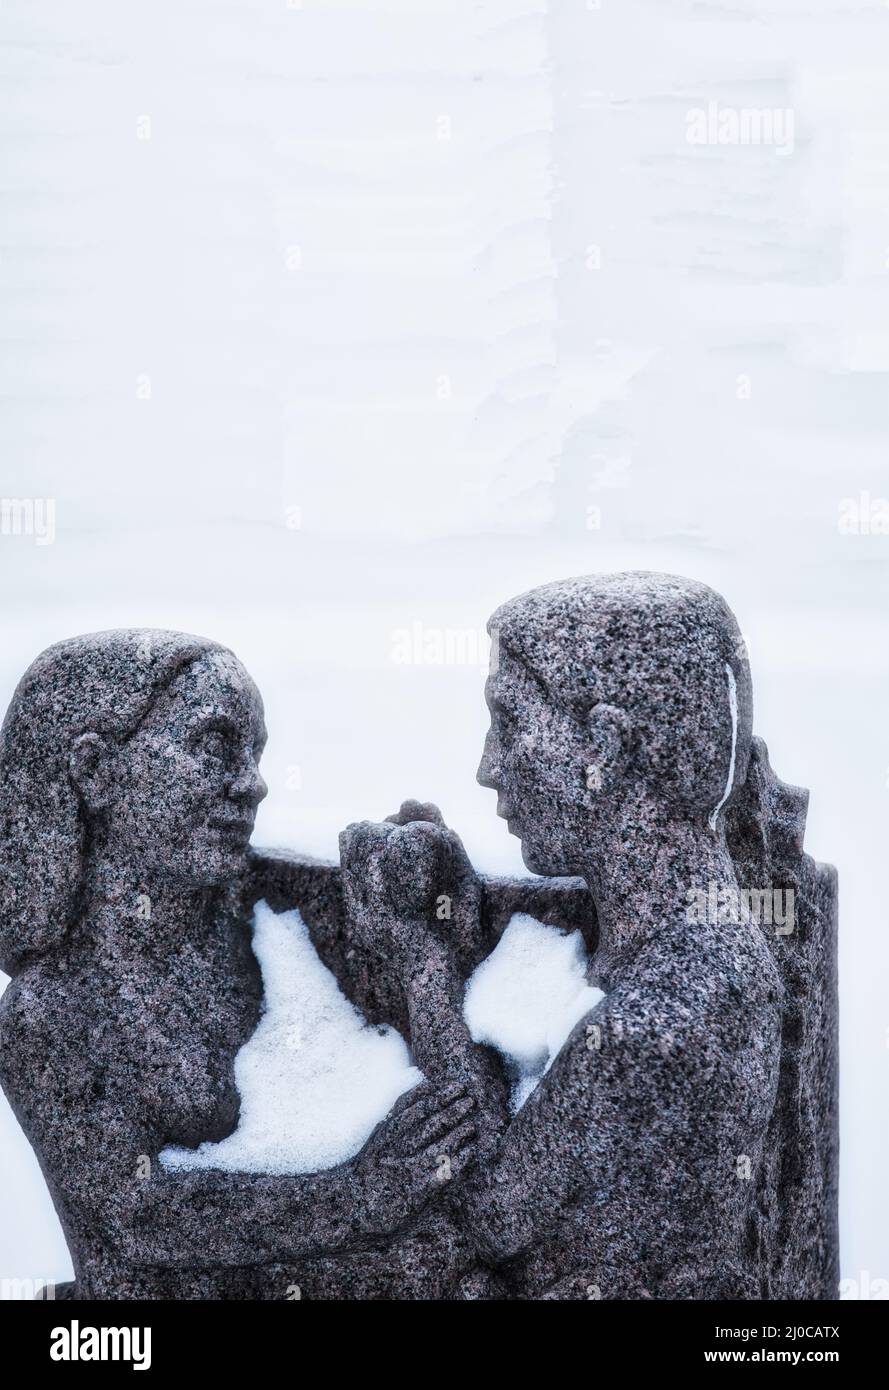 Schnee auf zwei geschnitzten Figuren Teil von 'Morgon' von Ivar Johnsson 1962, Brantingtorget, Gamla Stan, Stockholm, Schweden Stockfoto